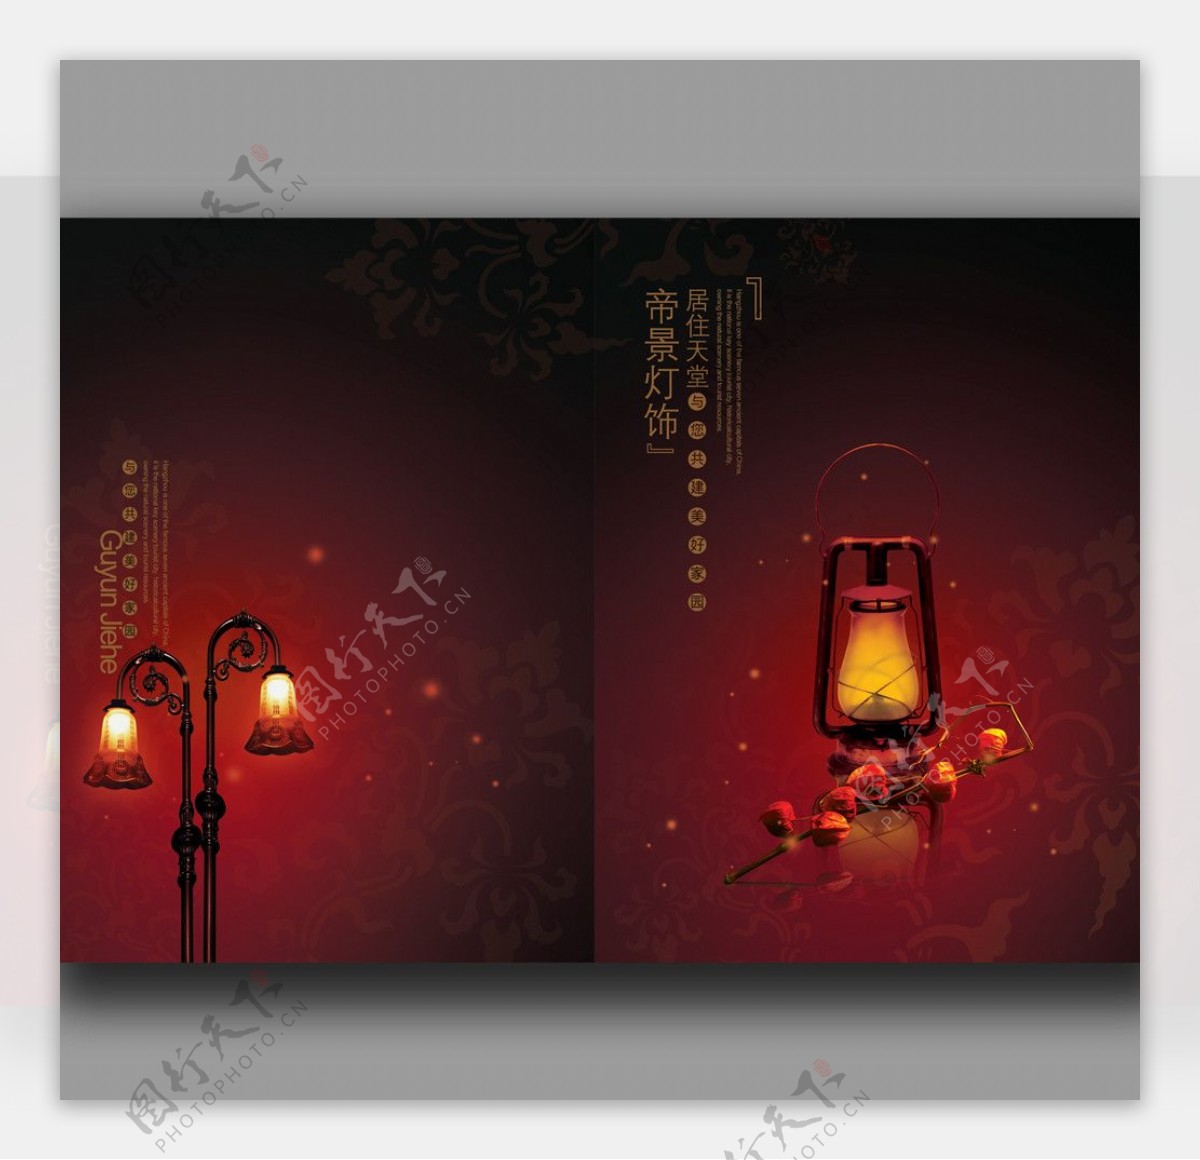 中国风灯饰画册封面设计图片